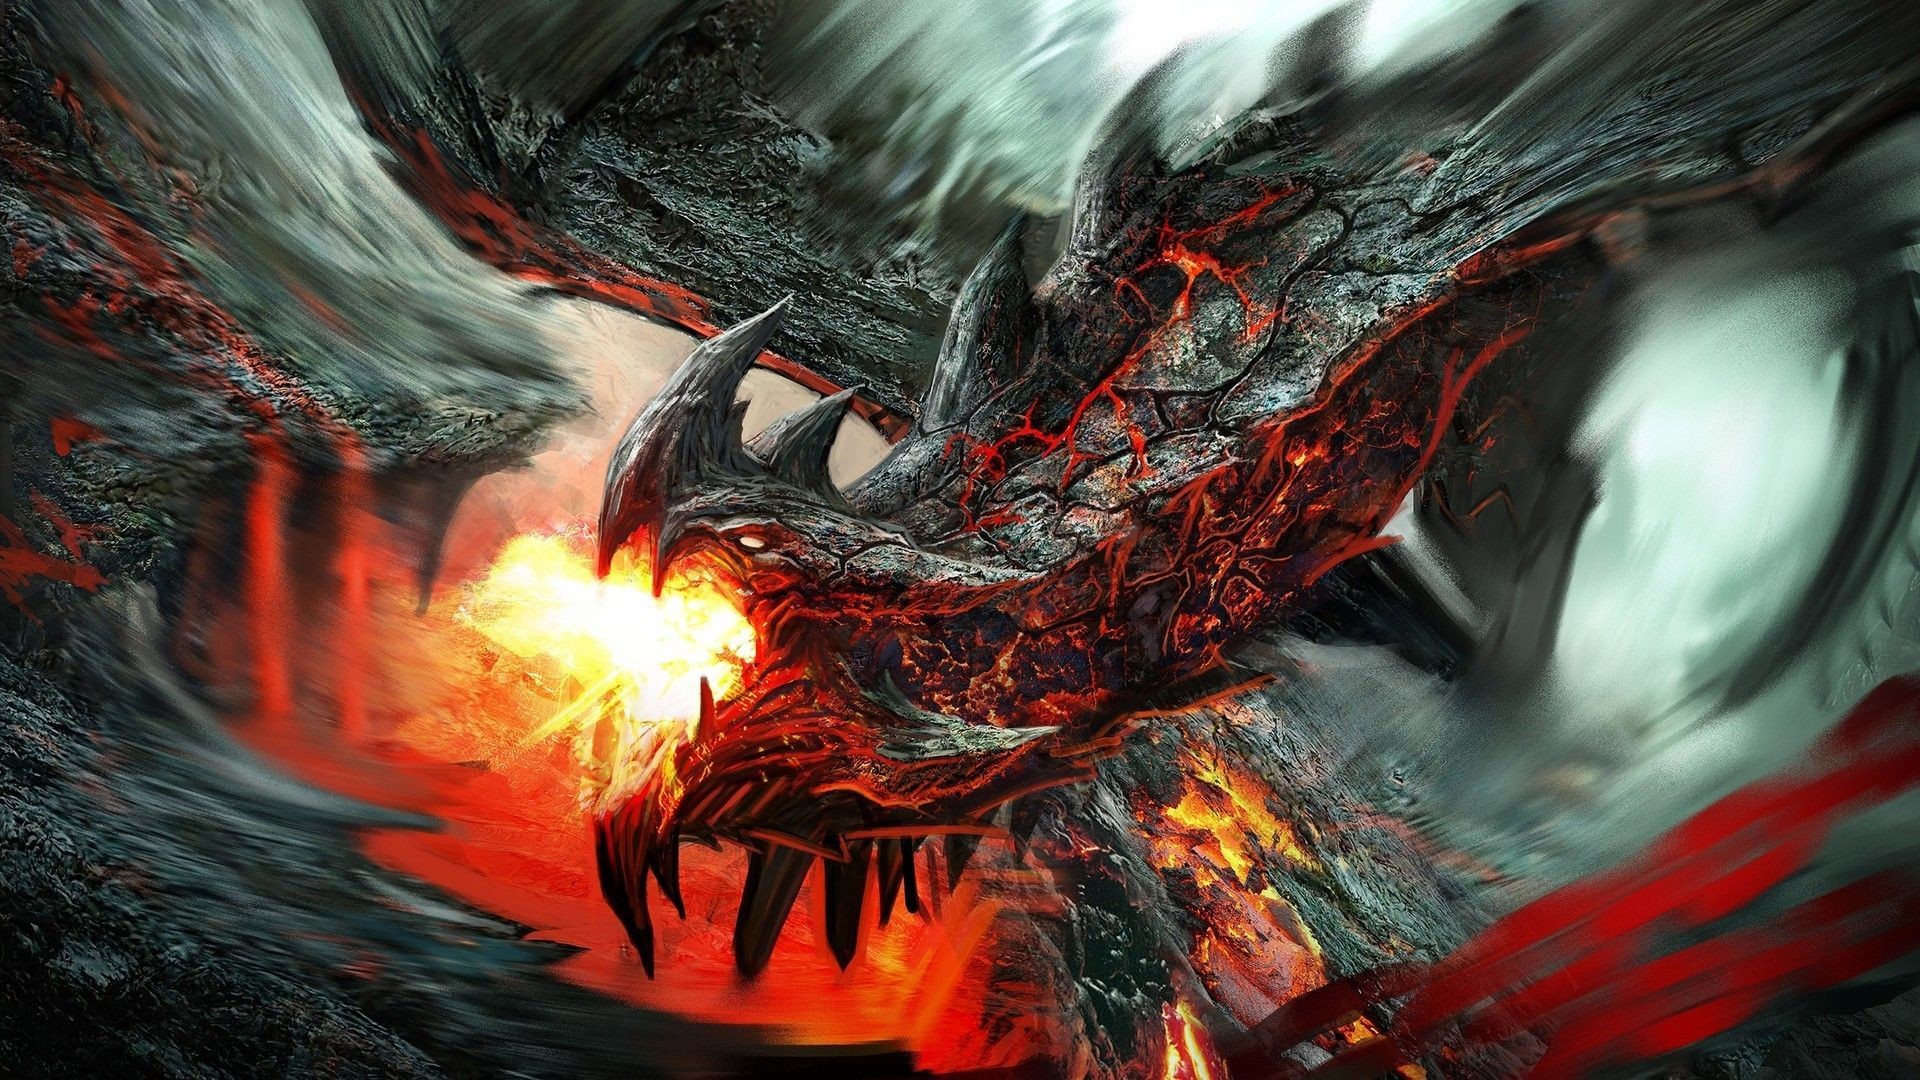 fond d'écran dragon téléchargement hd,dragon,démon,oeuvre de cg,personnage fictif,créature mythique